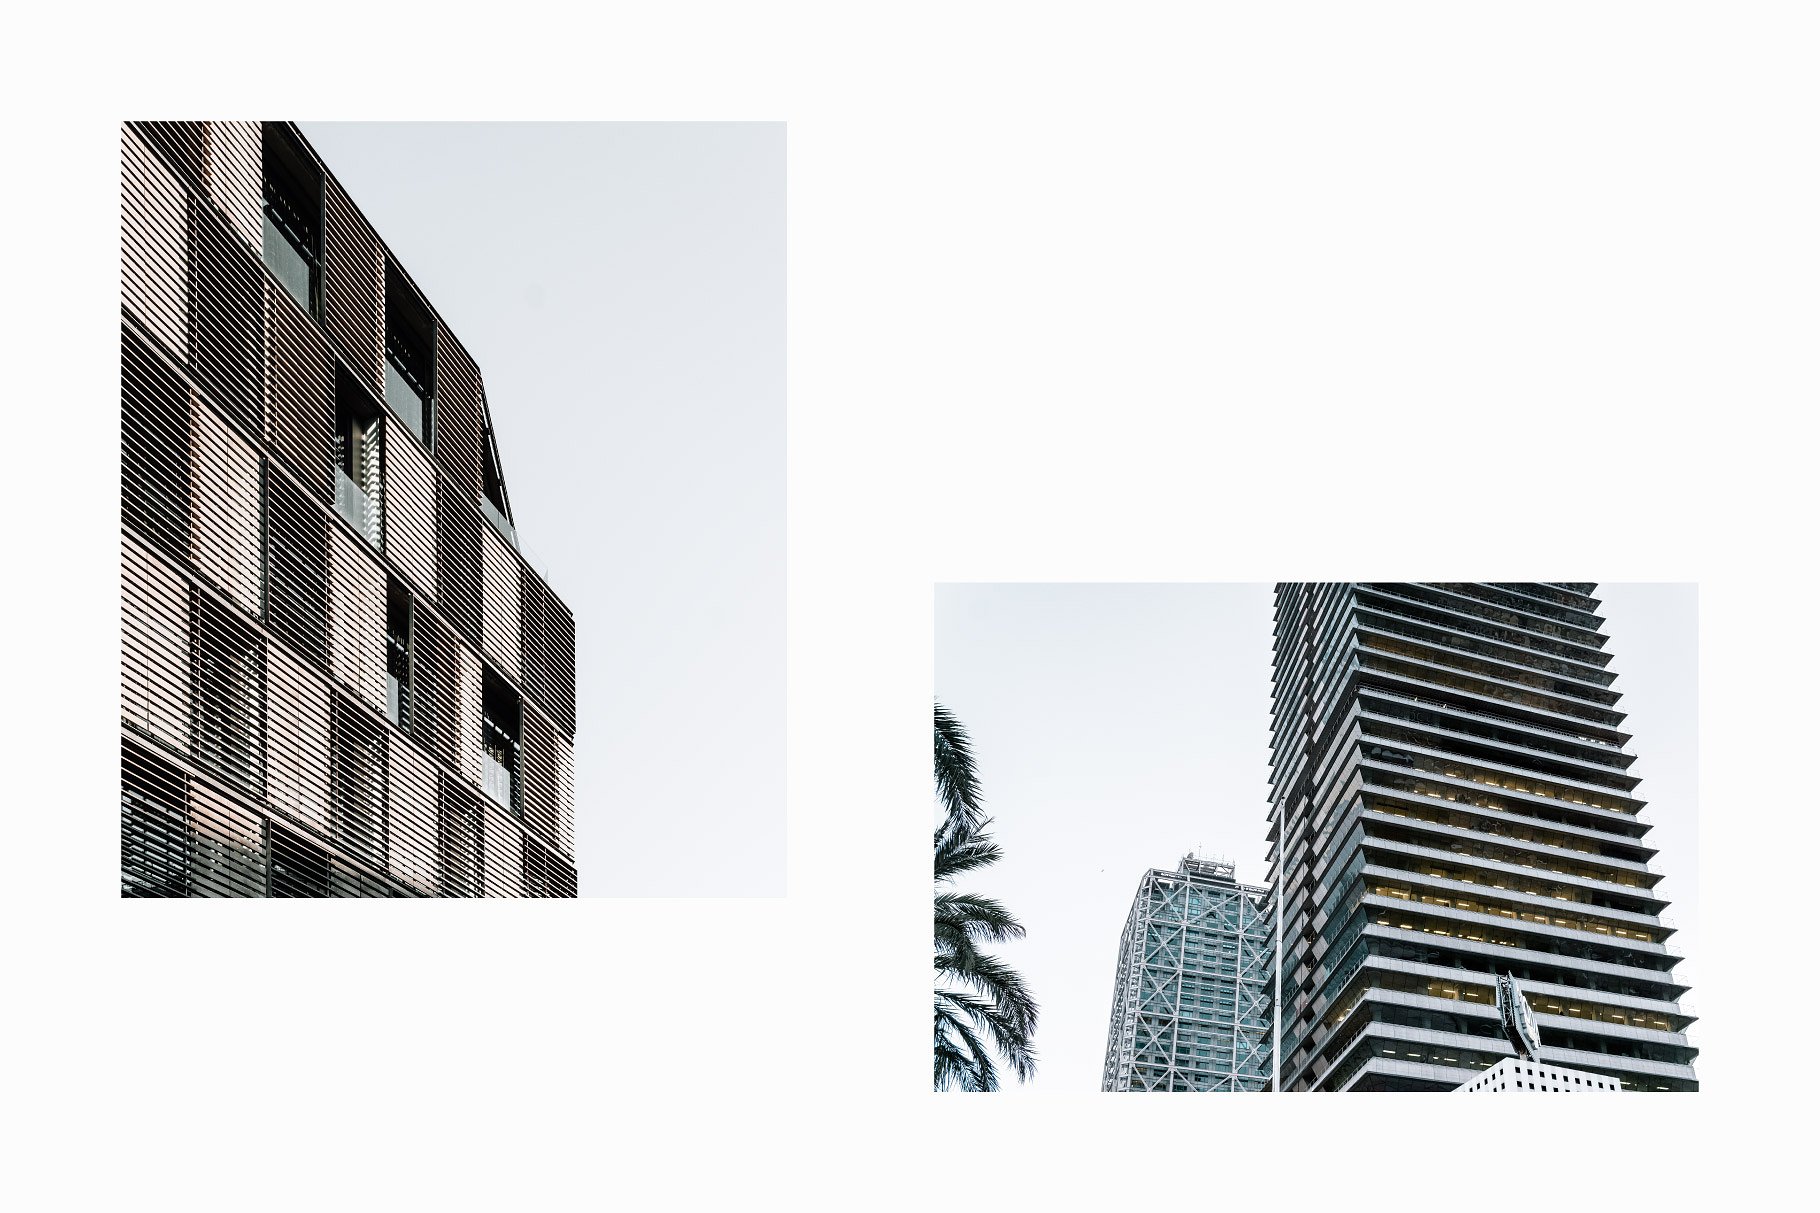 10张高分辨率建筑照片V.3 10 Architecture Photos Pack Vol.3插图5